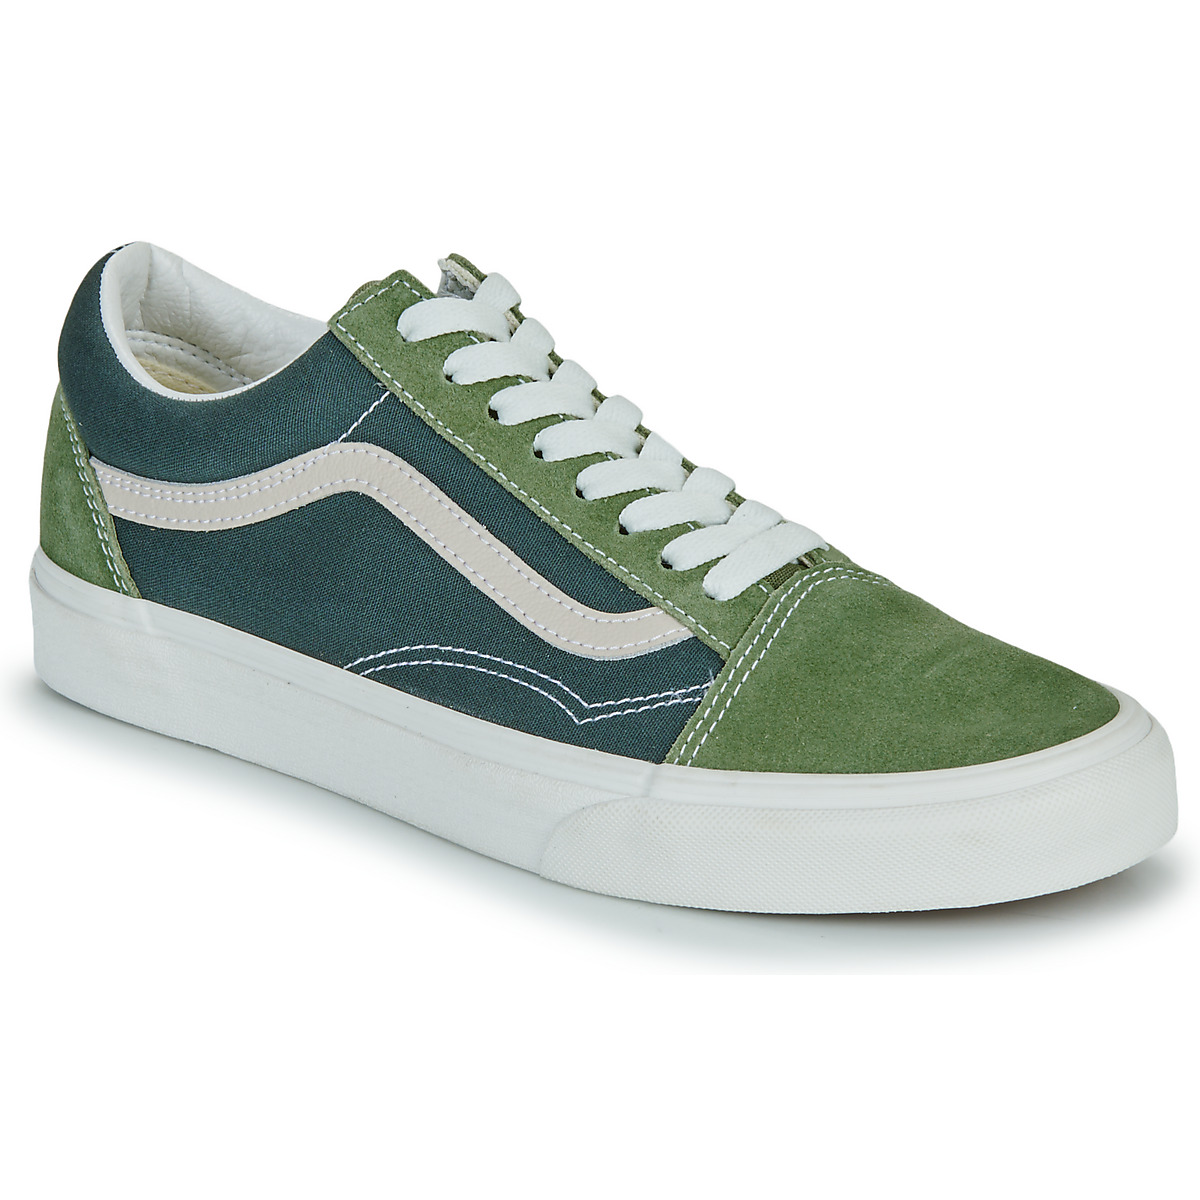 Cipők Rövid szárú edzőcipők Vans Old Skool TRI-TONE GREEN Zöld